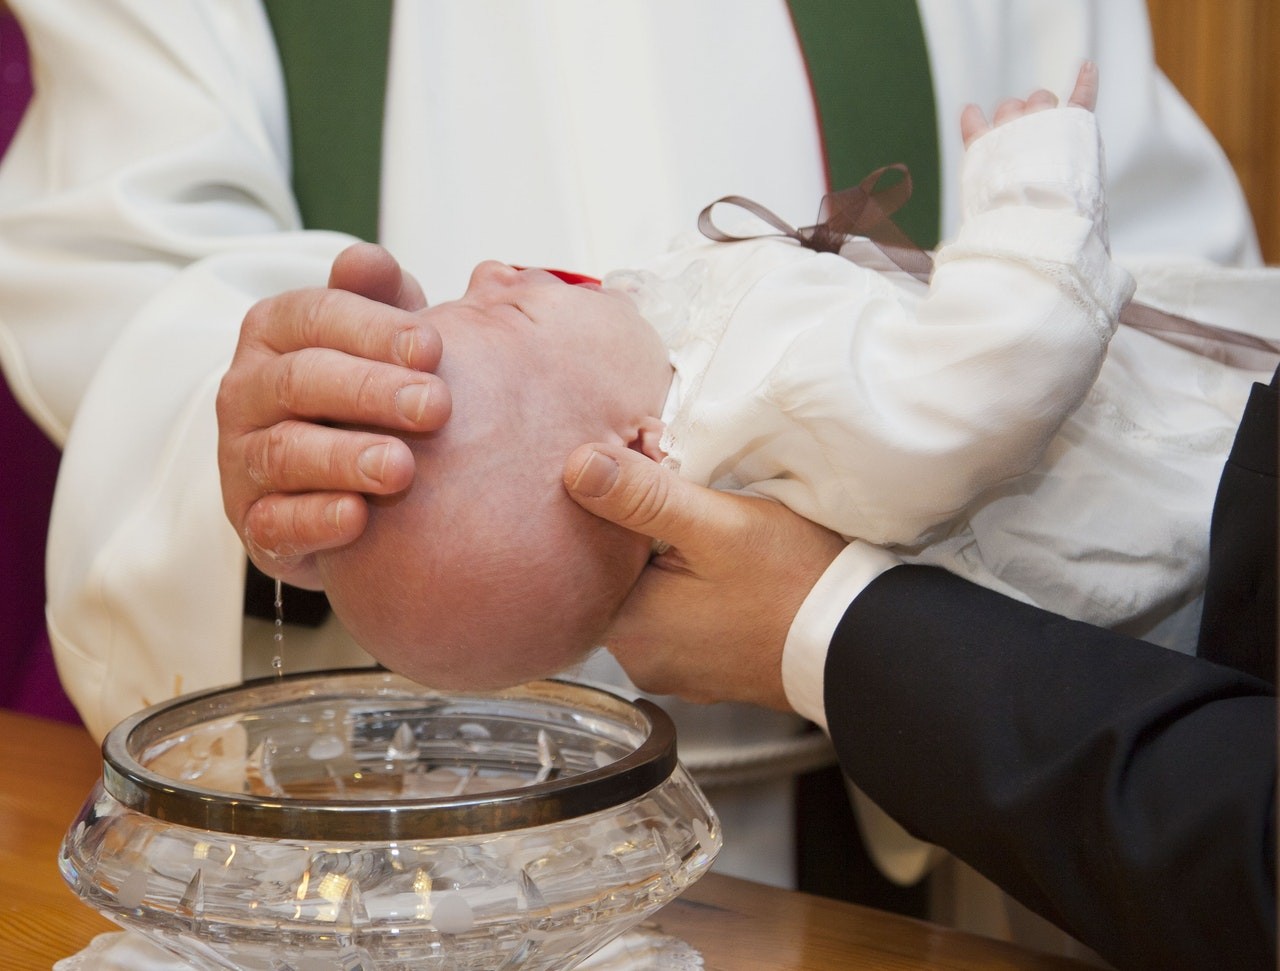 O que invalida o batismo?